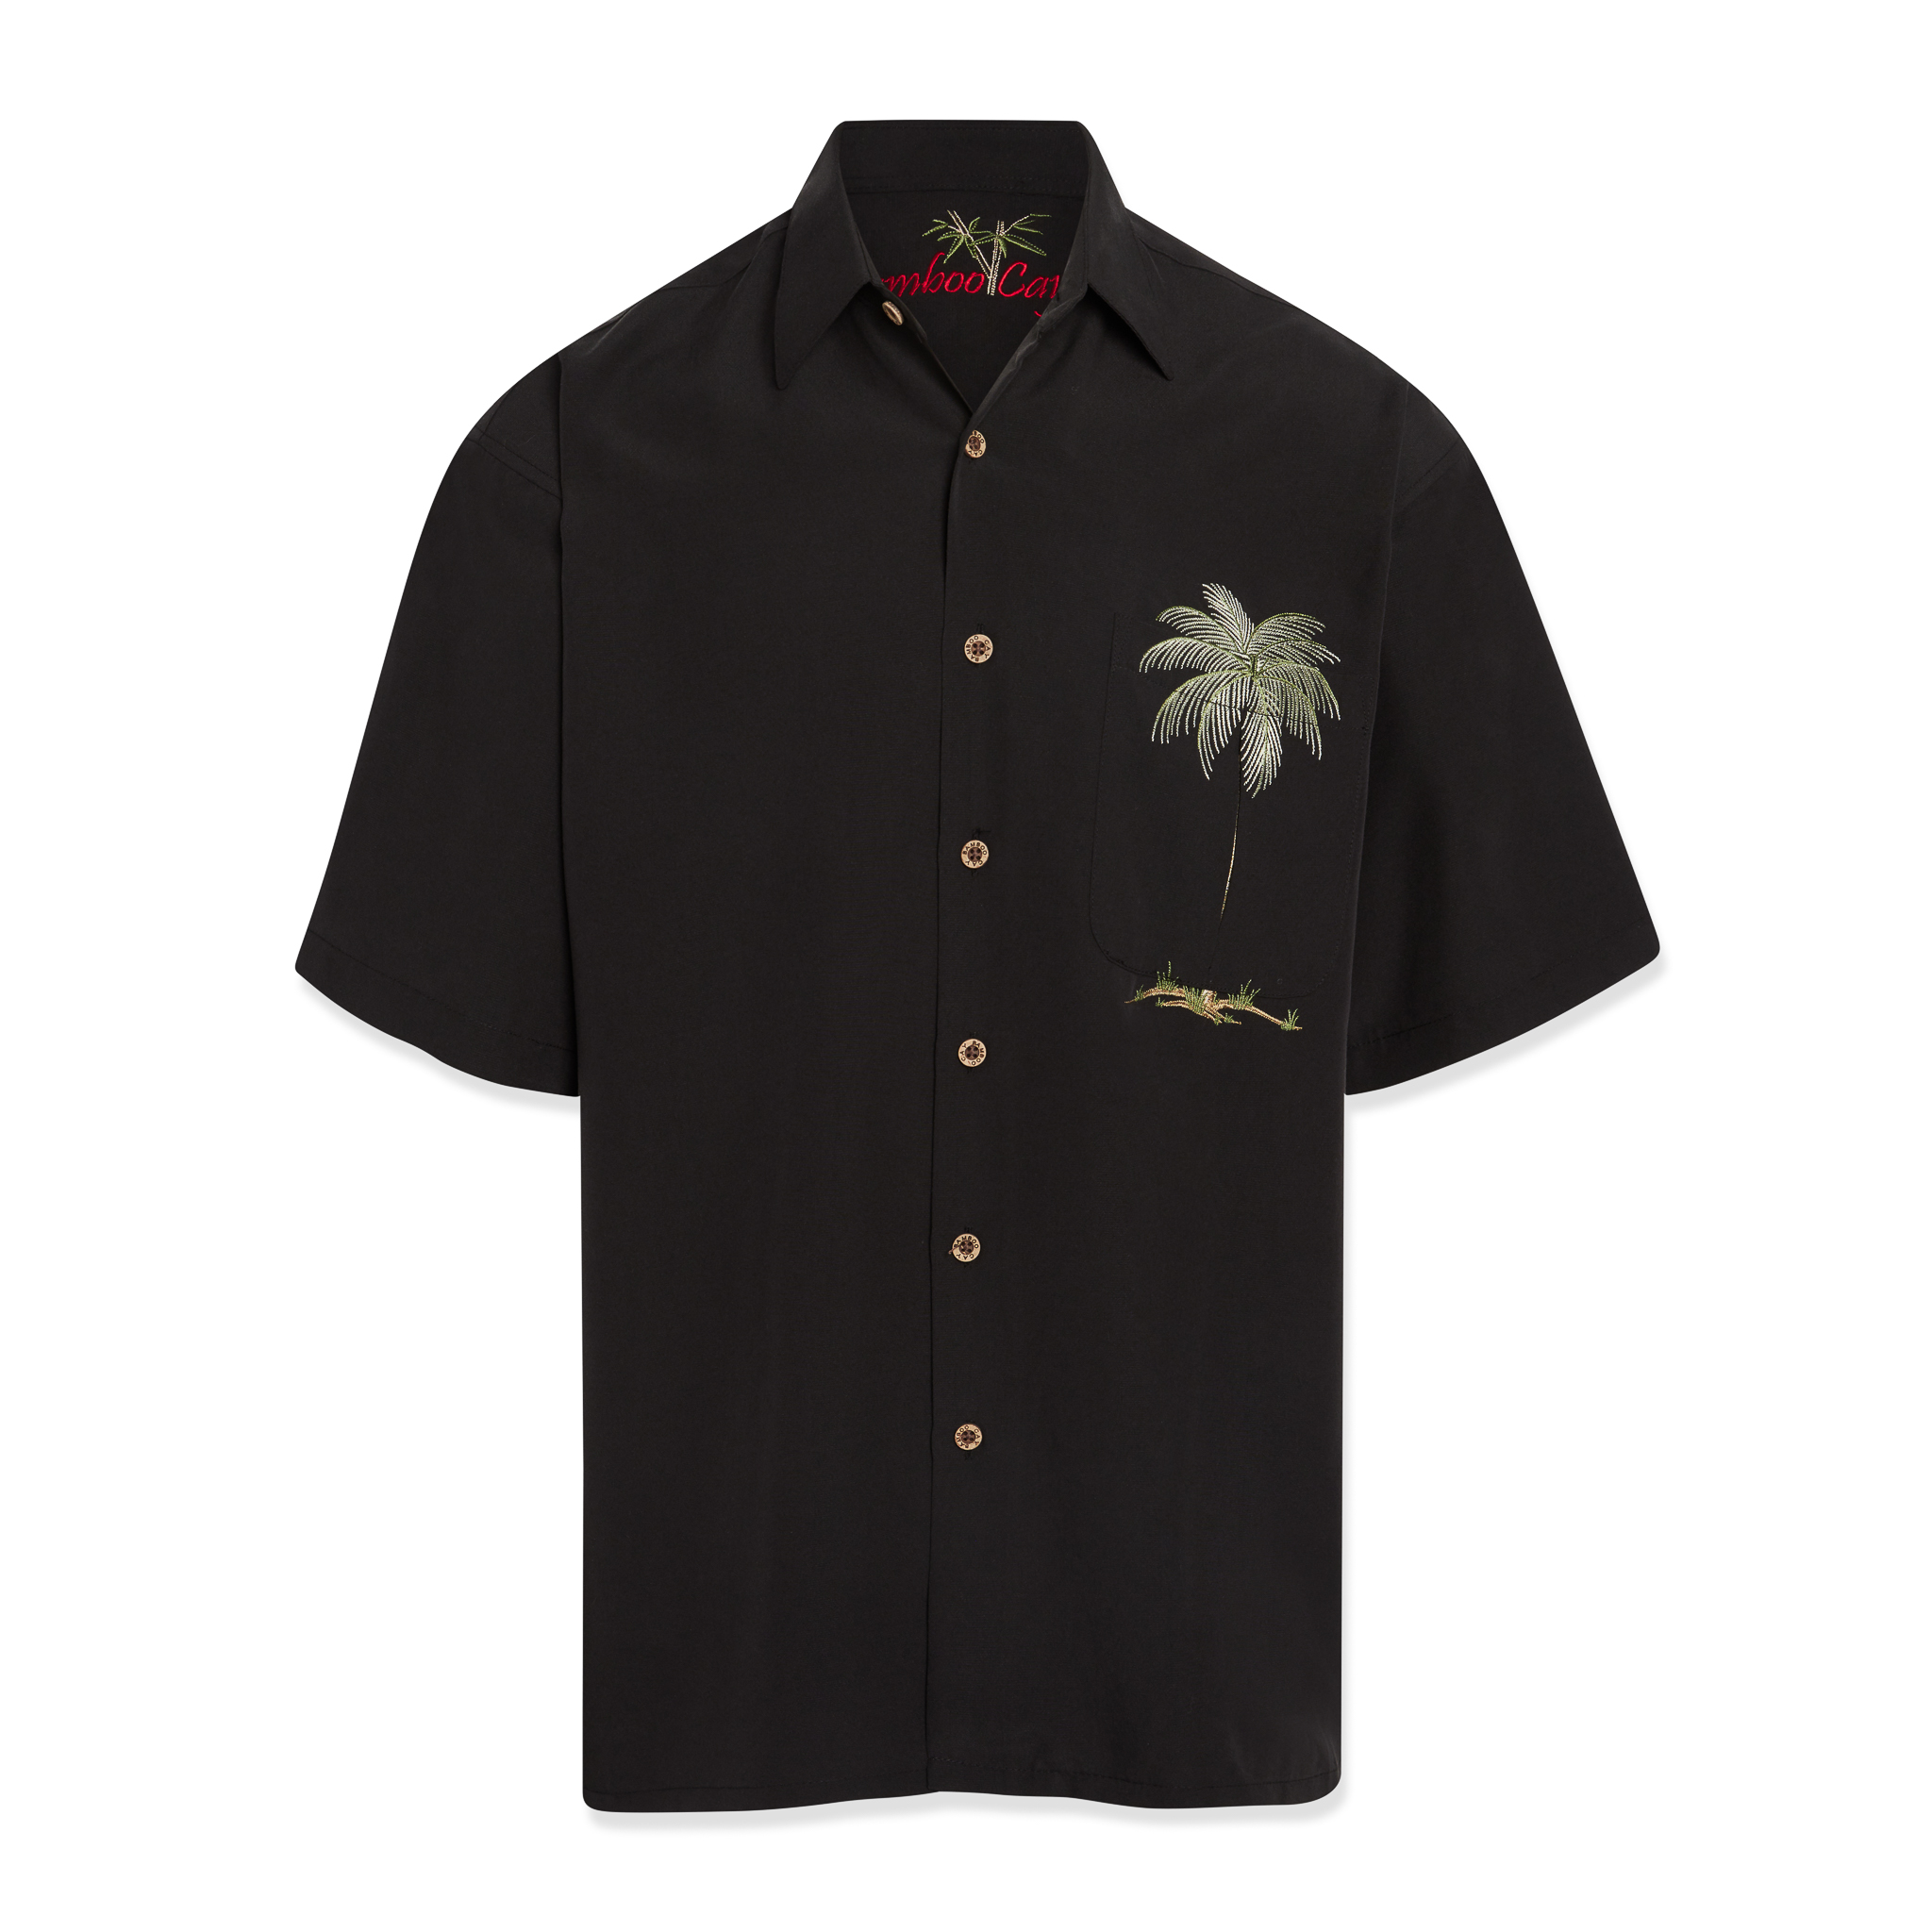 Bamboo cay short sleeve palm tree mens pocket shirt